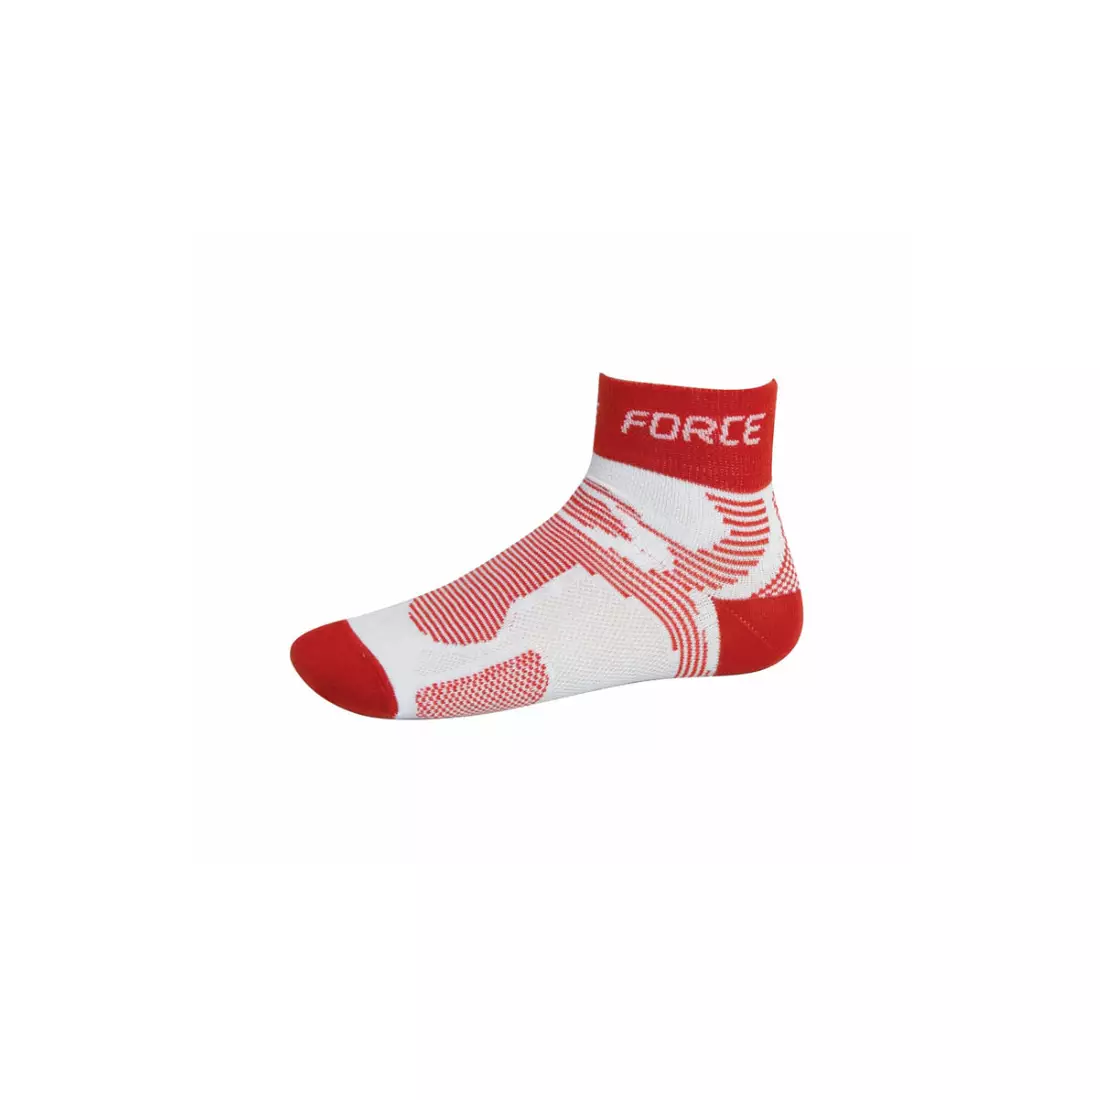 FORCE 2 COOLMAX sportovní ponožky 901024/901028 - bílé a červené